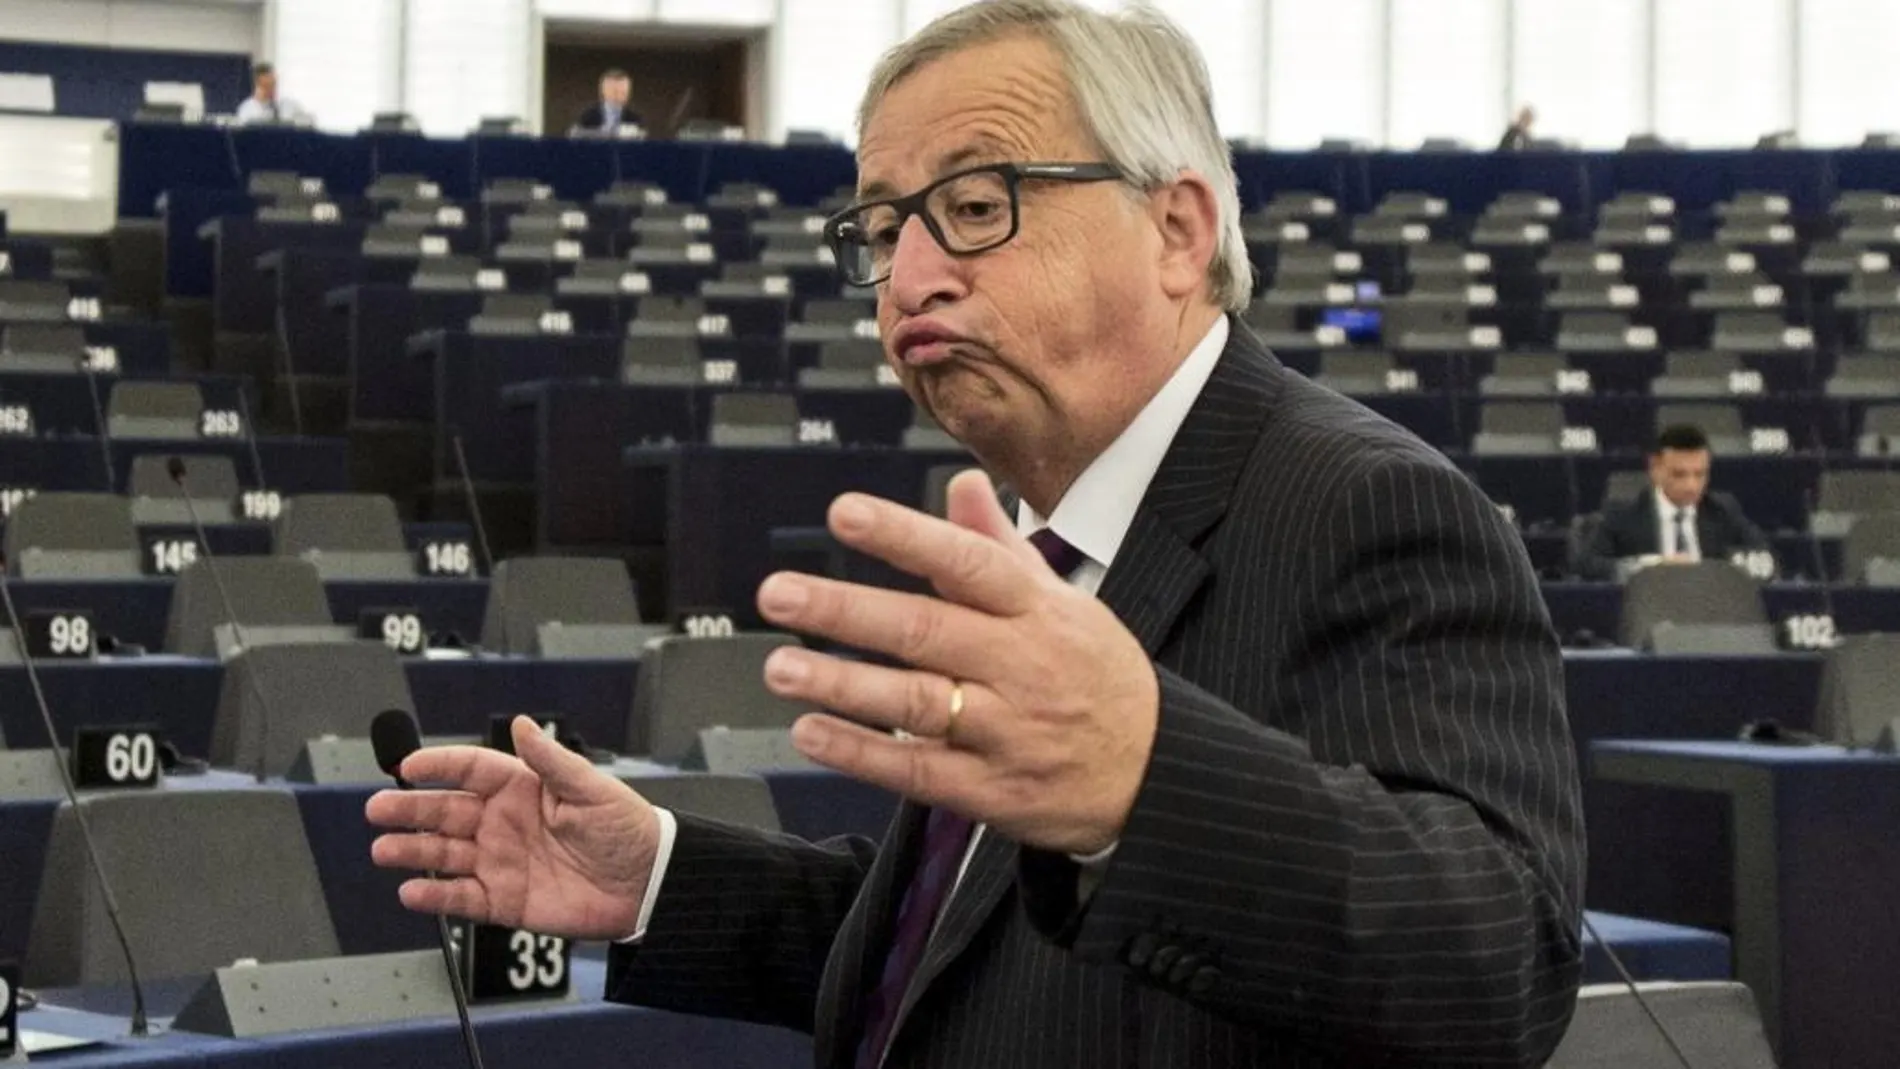 El presidente de la Comisión Europea, Jean-Claude Juncker, da un discurso durante la sesión plenaria del Parlamento Europeo en Estrasburgo